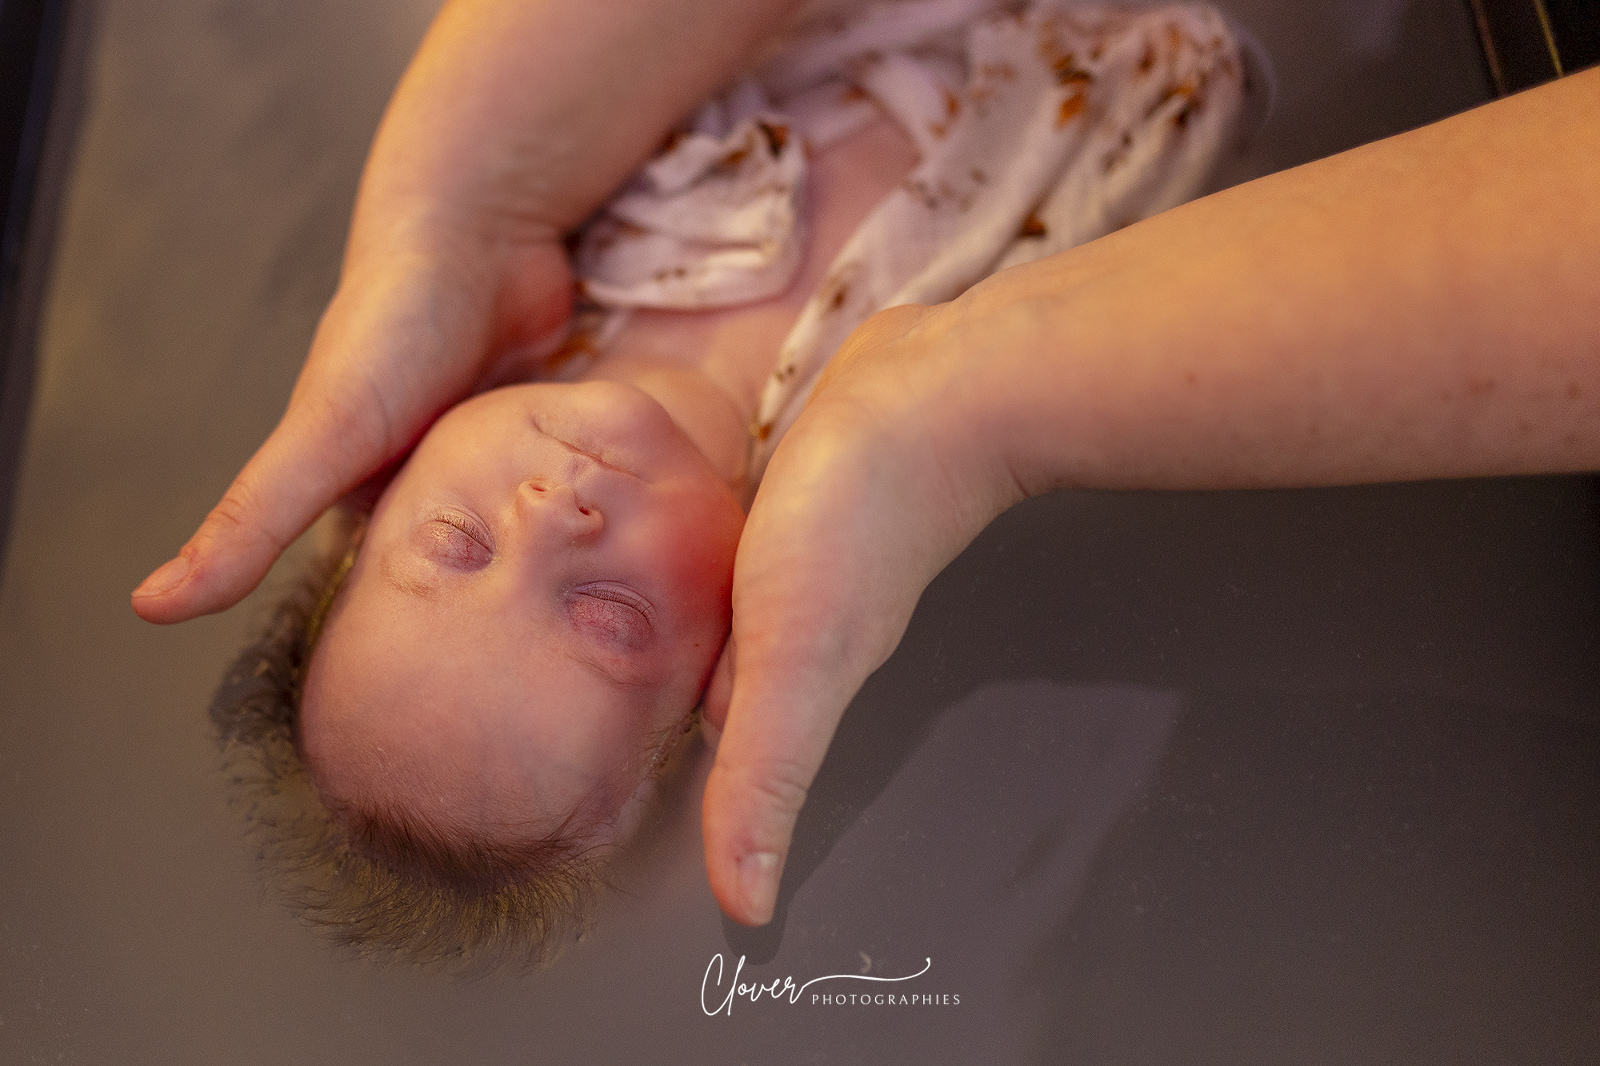 Reportage photo vidéo bain enveloppé thérapeutique photographe bébé strasbourg Truchtersheim obernai clover photographies